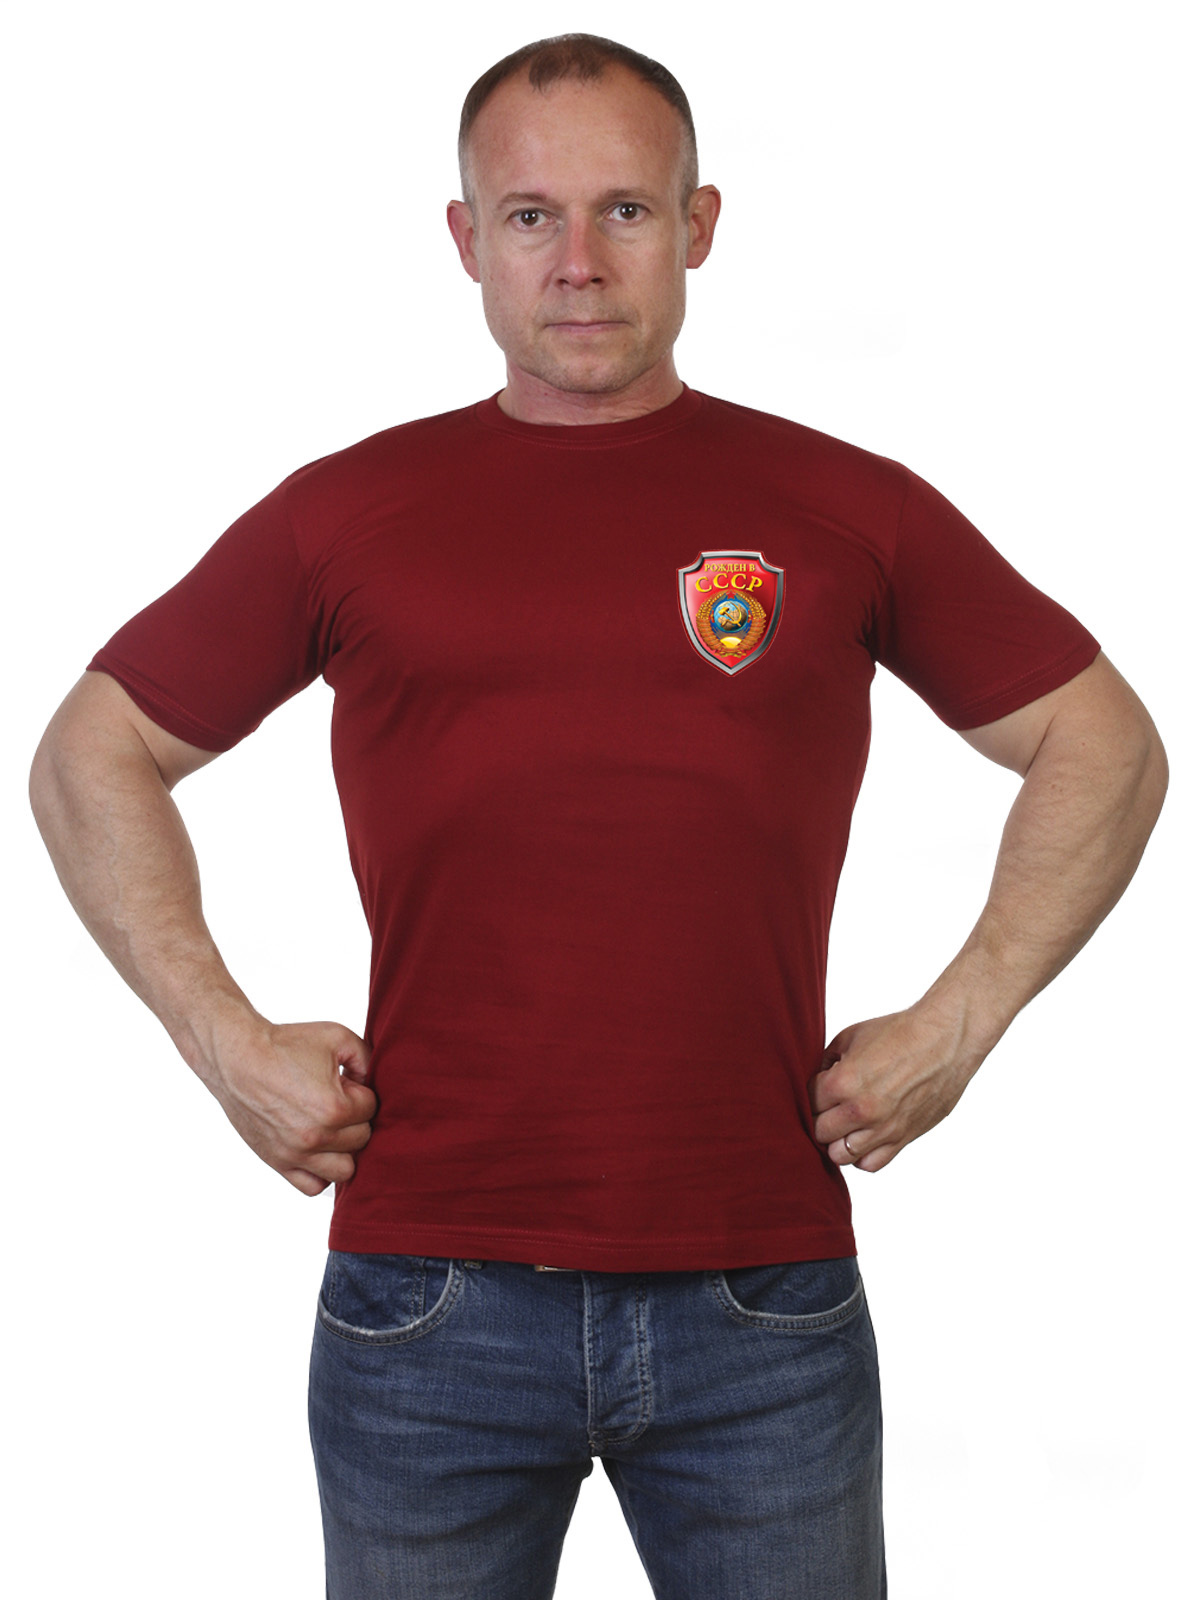 Краповая мужская футболка СССР 